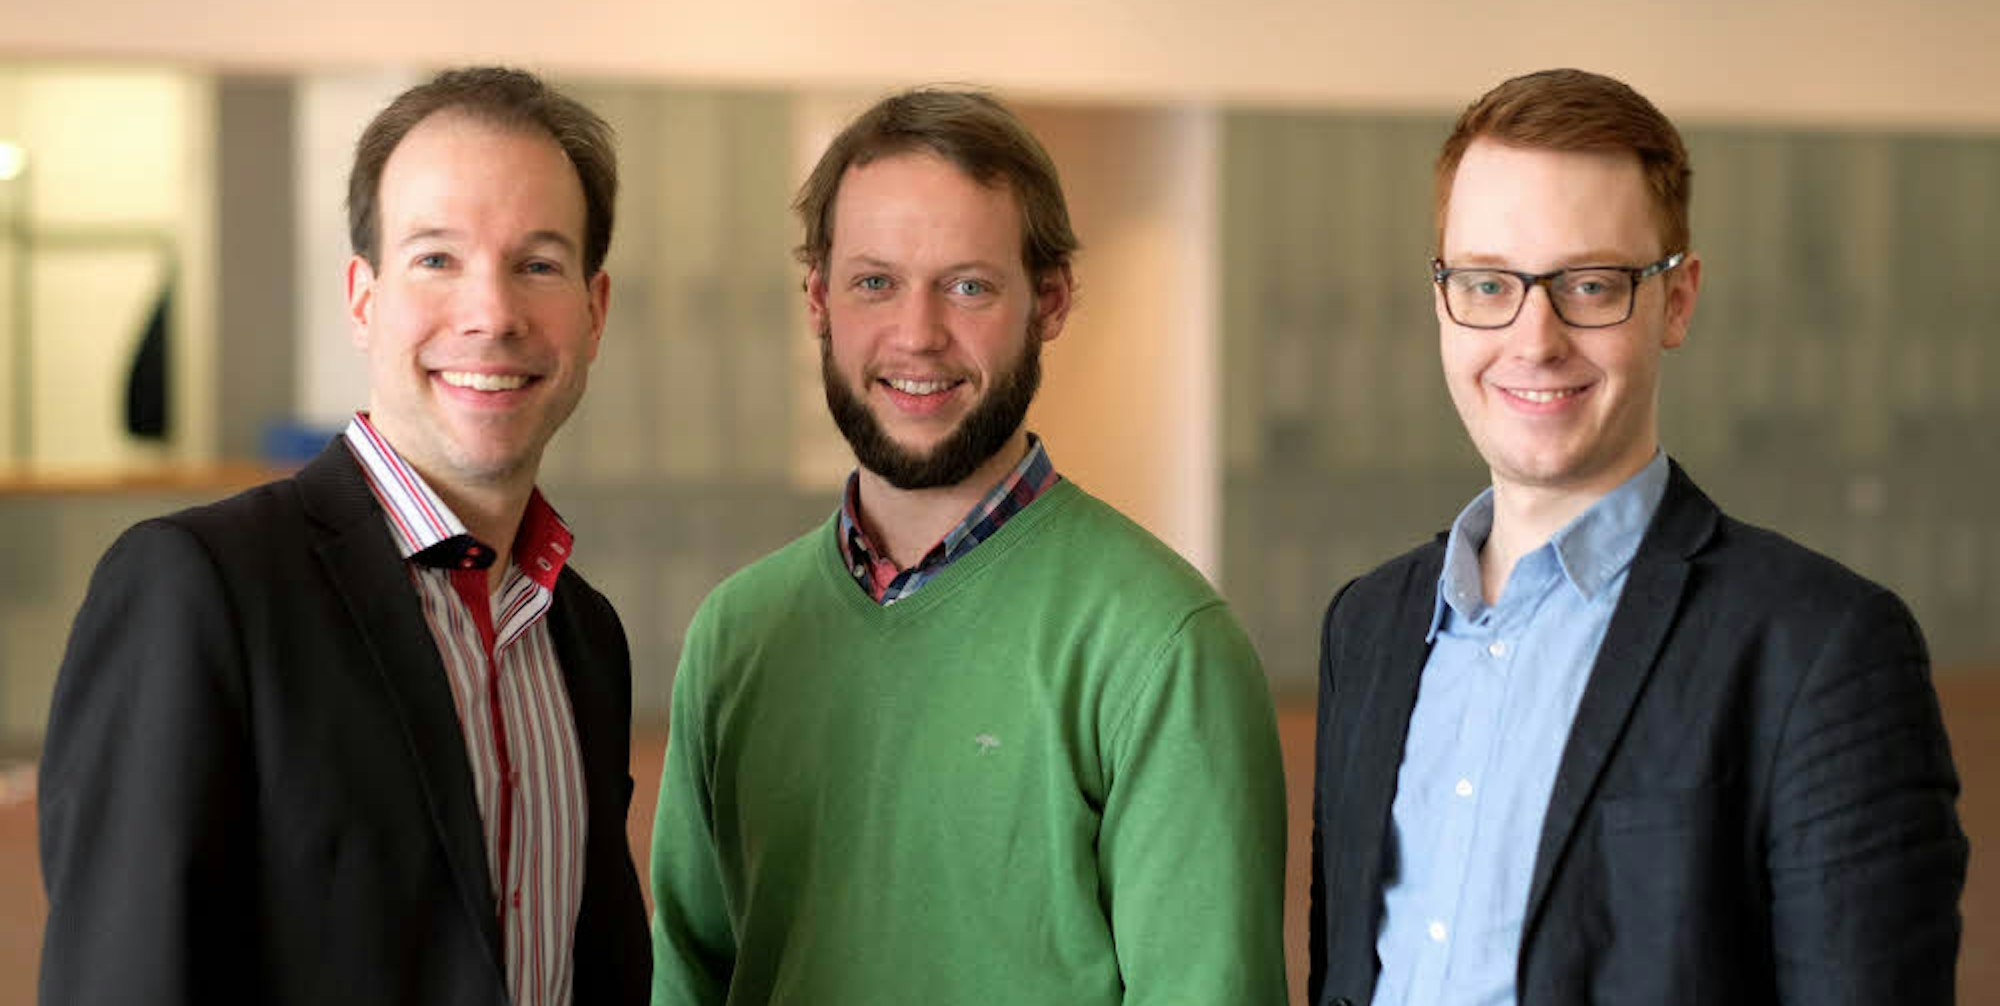 Optimistisch in die Zukunft: Georg Hage, Paul Krämer, Arndt Martin Henzelmann (von links)